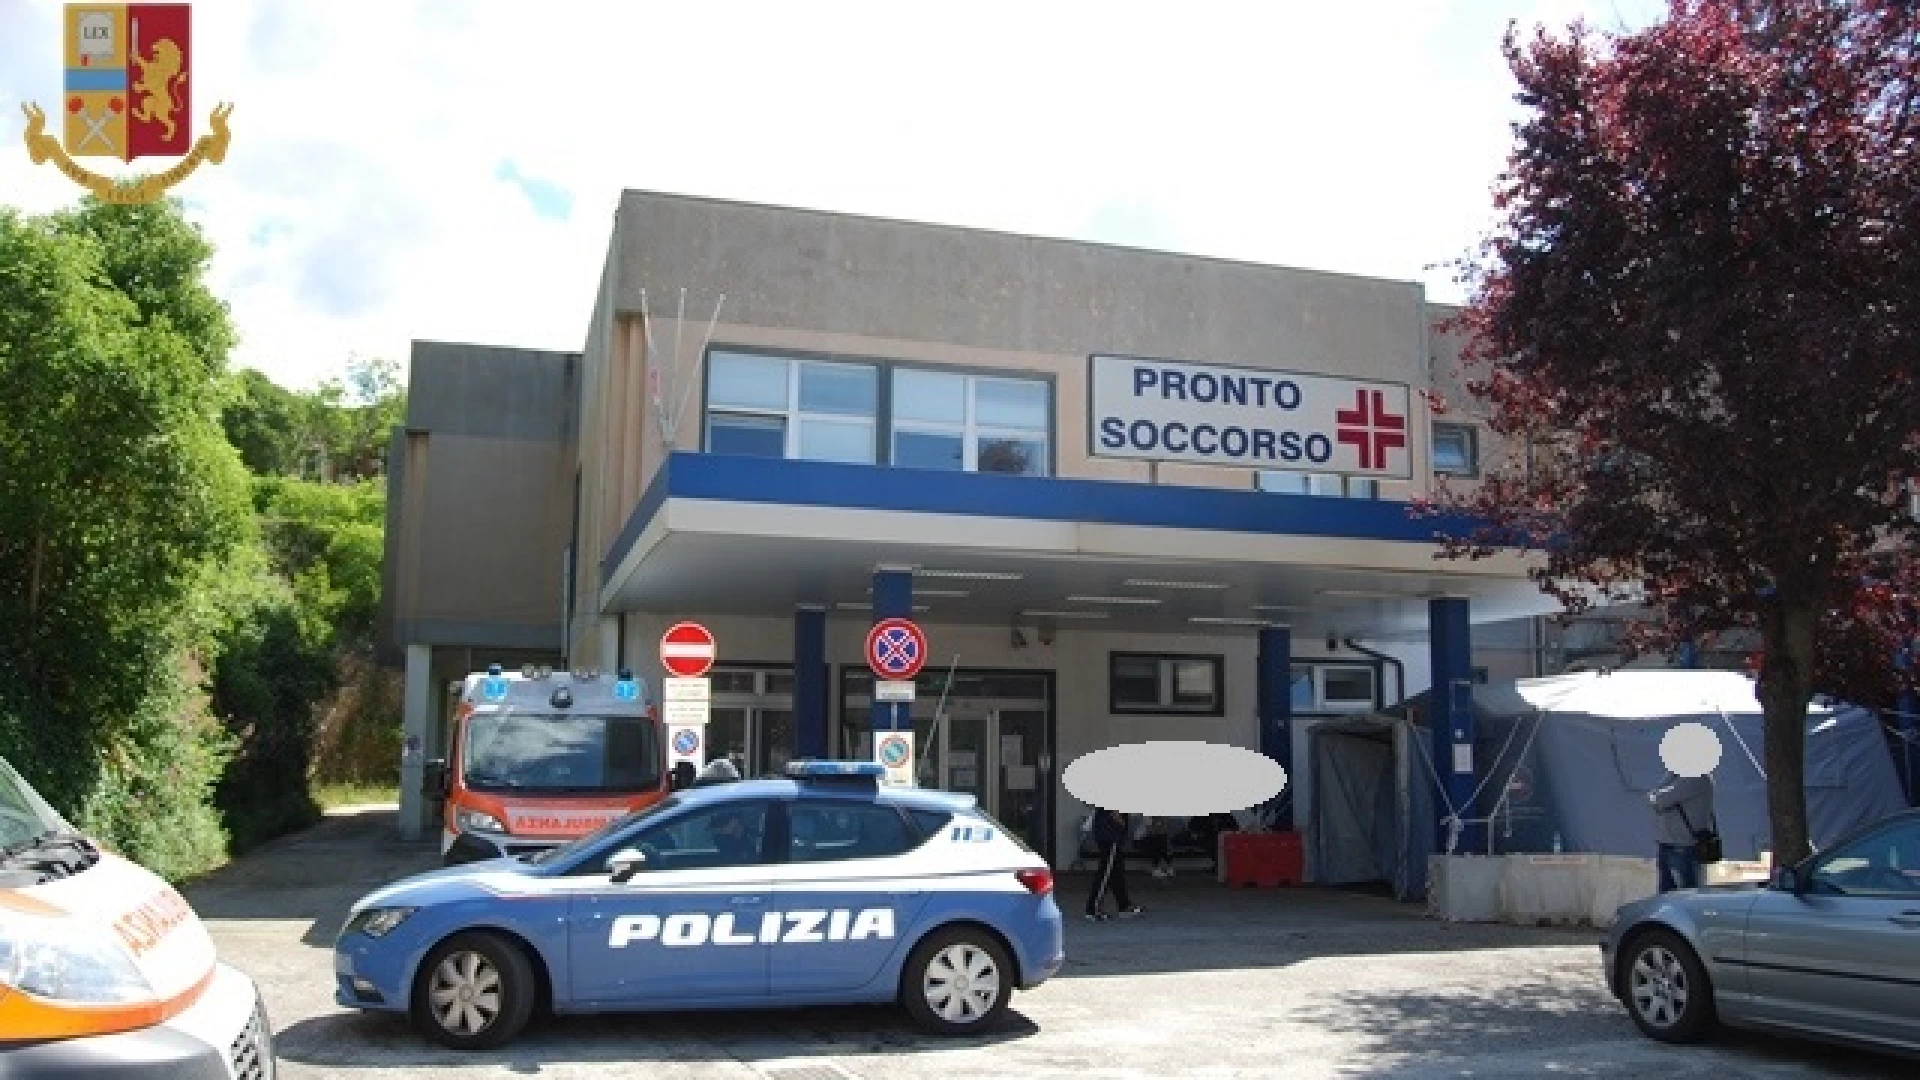 Isernia: la Polizia di Stato intensifica i controlli presso l’Ospedale Veneziale di Isernia.